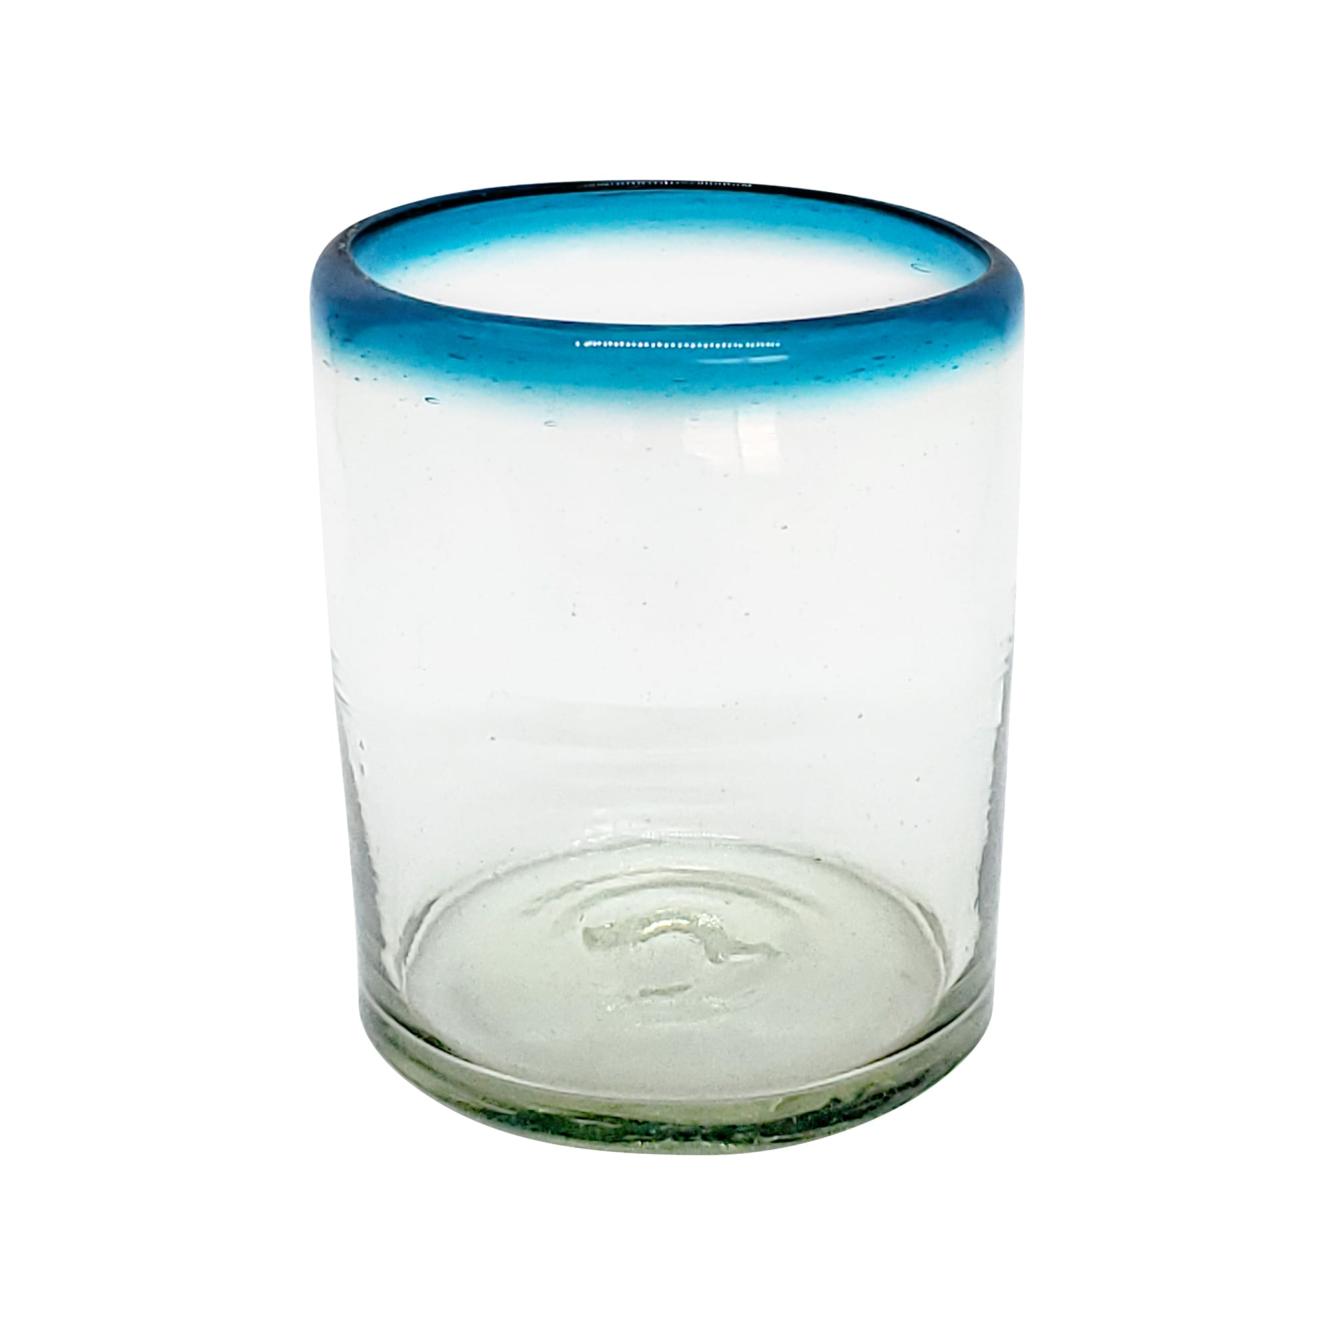 Vasos de Vidrio Soplado al Mayoreo / vasos chicos con borde azul aqua, 10 oz, Vidrio Reciclado, Libre de Plomo y Toxinas / stos vasos chicos son un gran complemento para su juego de jarra y vasos grandes.